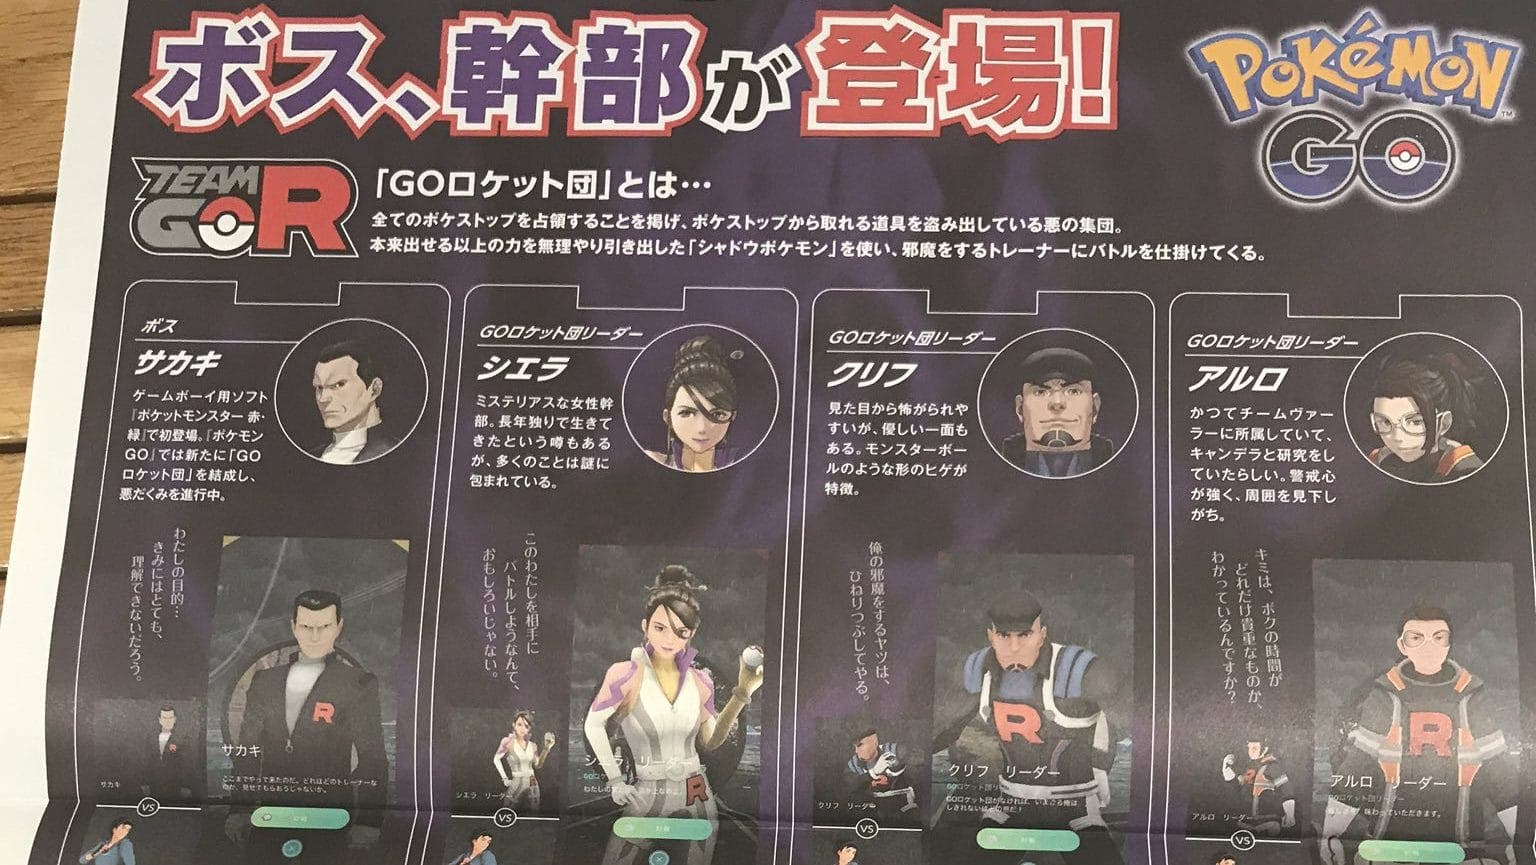 Folletos del Team GO Rocket de Pokémon GO se están distribuyendo en Japón